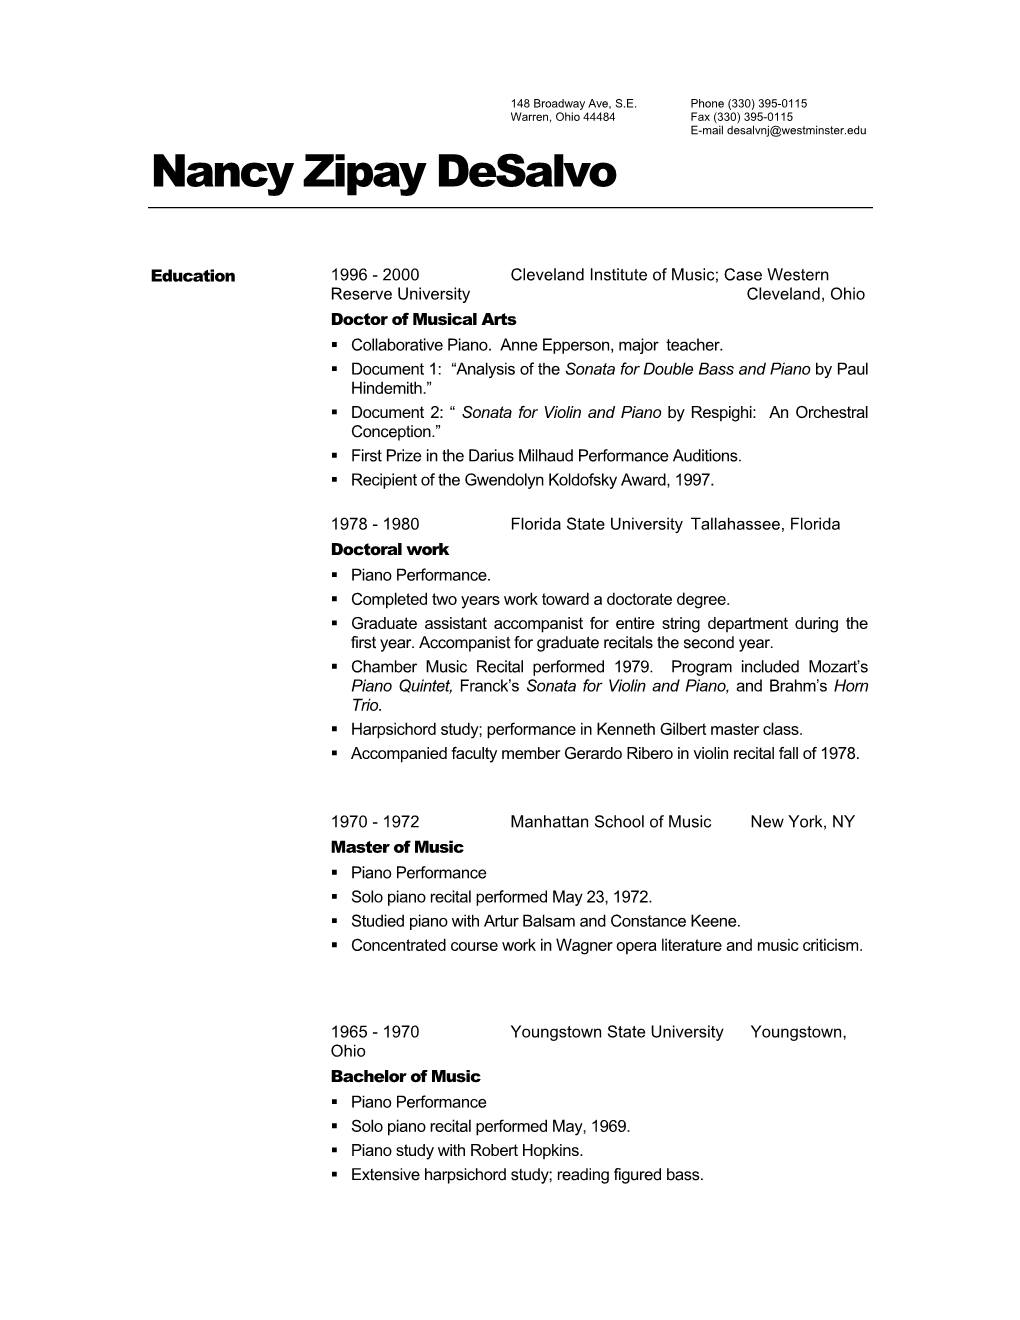 Nancy Zipay Desalvo